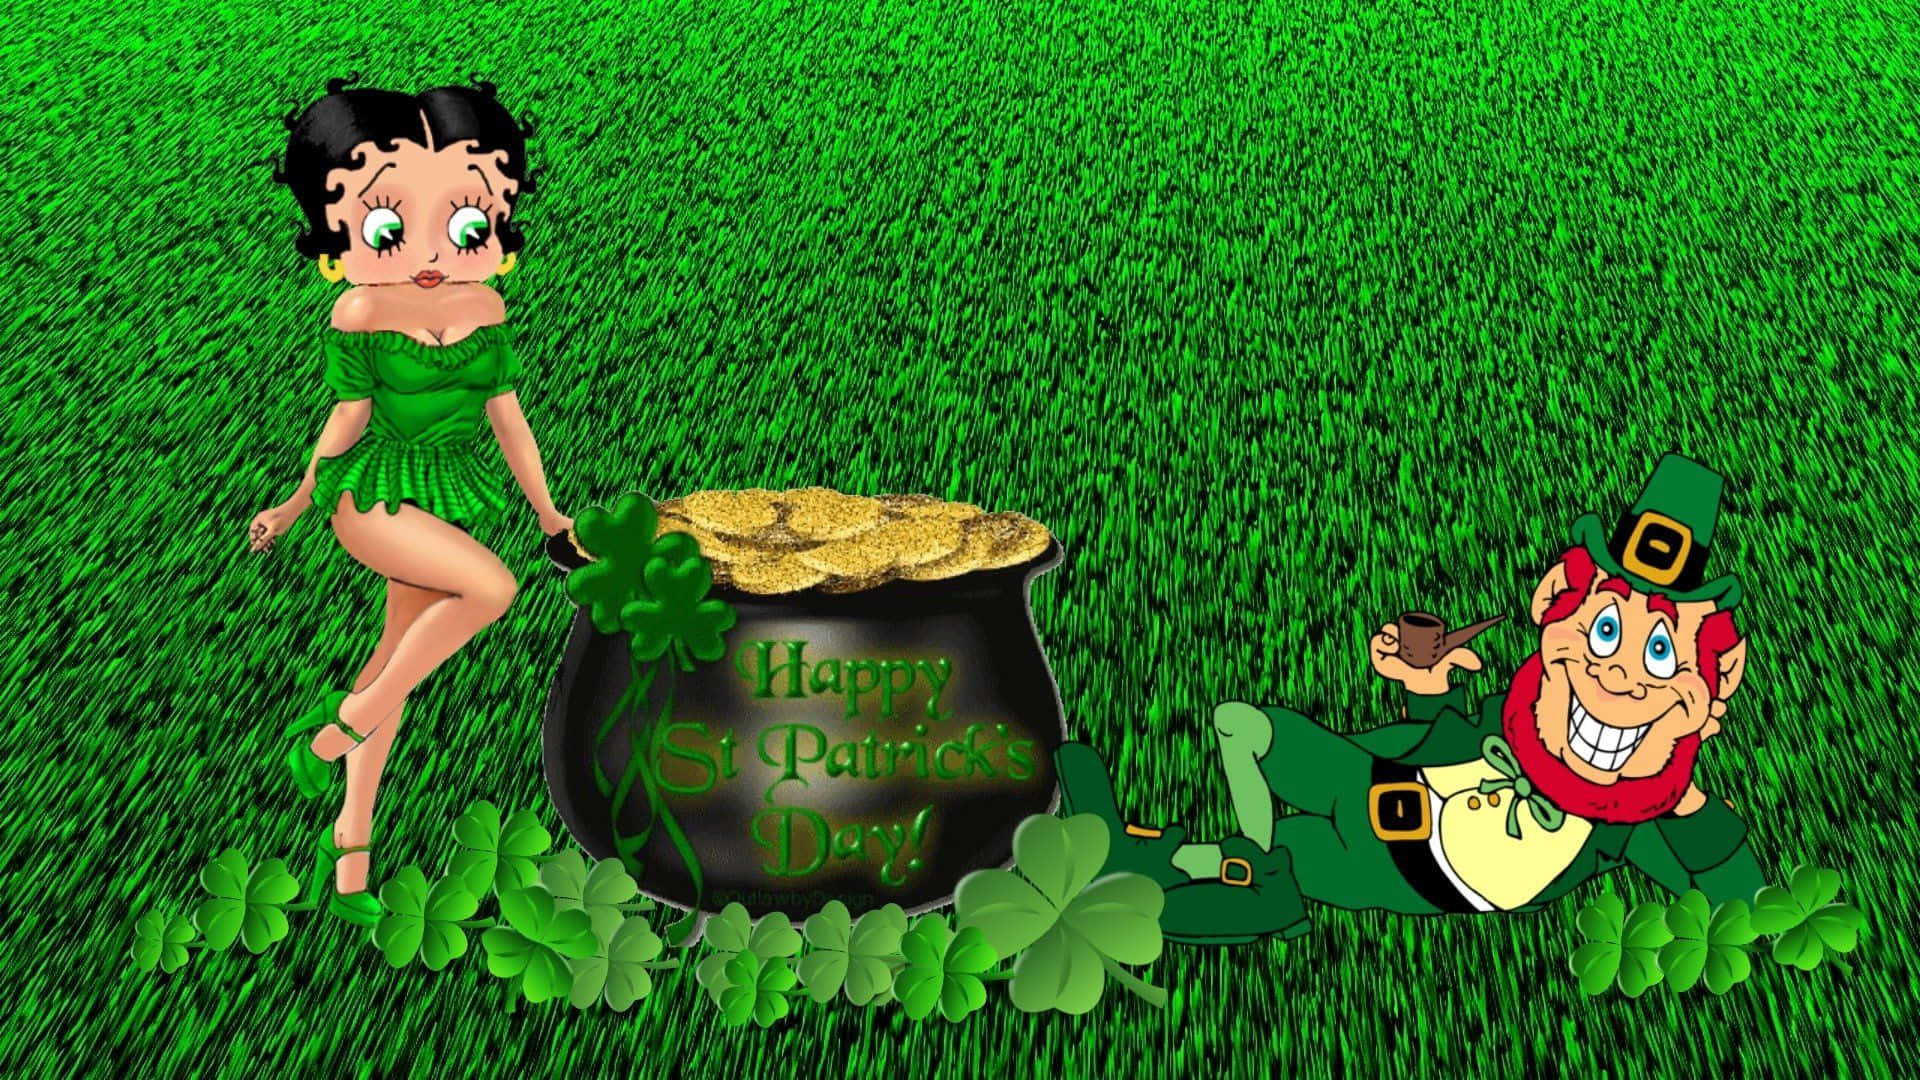 Bettyboop Und Der Irische Kobold St. Patrick's Day Hintergrund